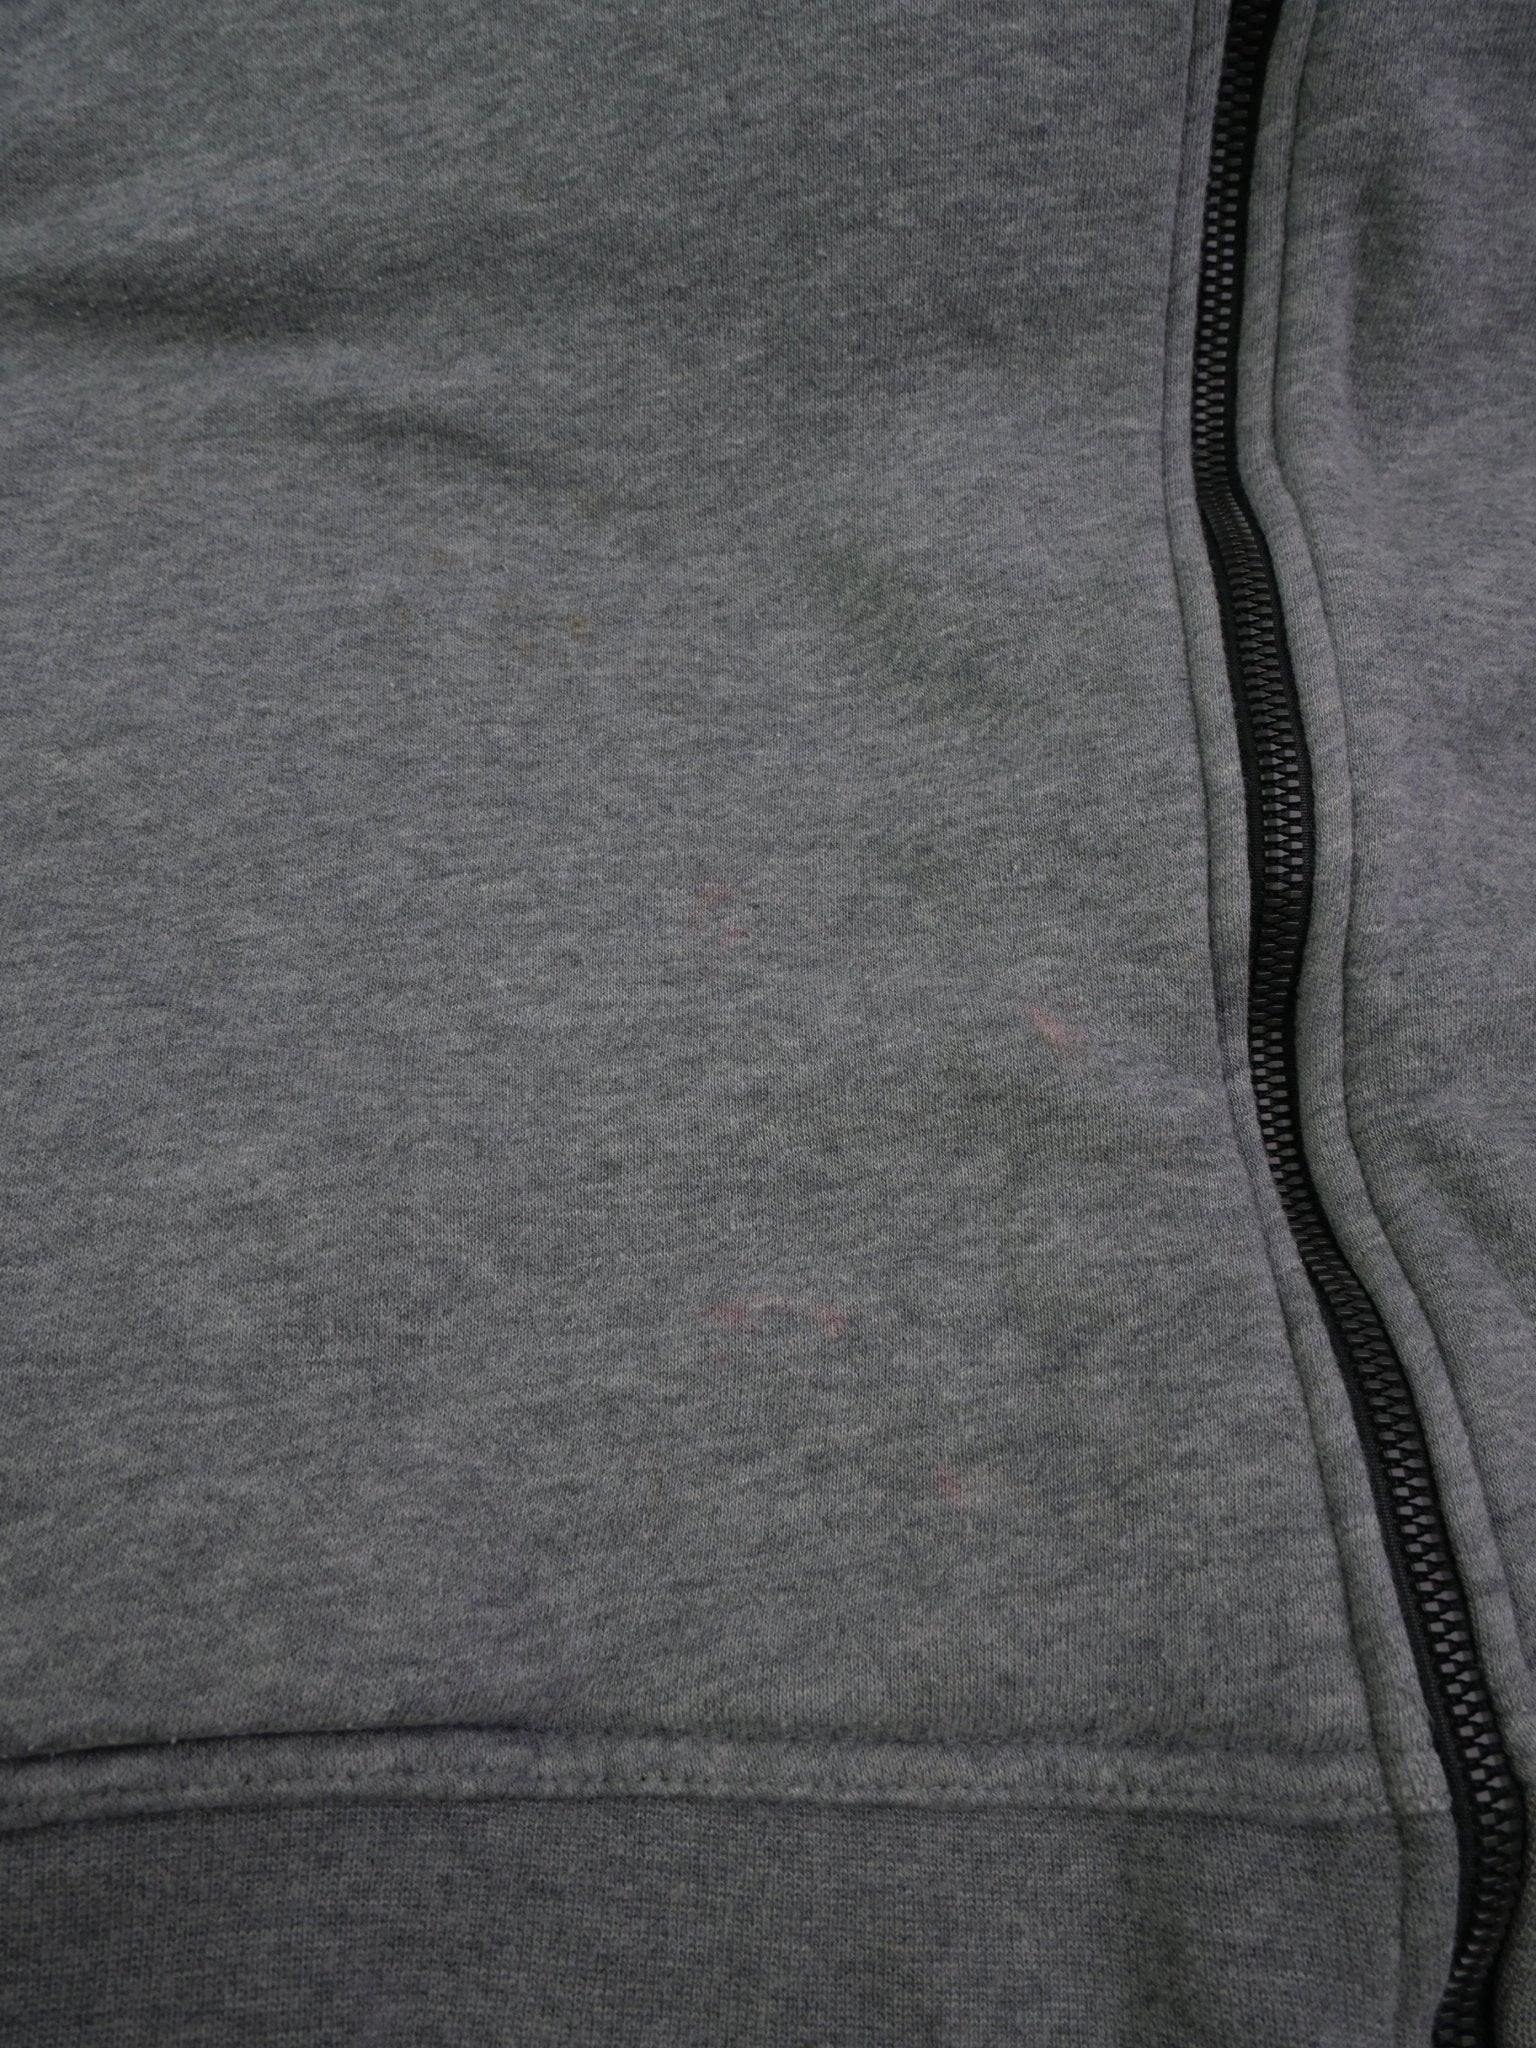 nike embroidered Logo basic grey Jacke - Peeces